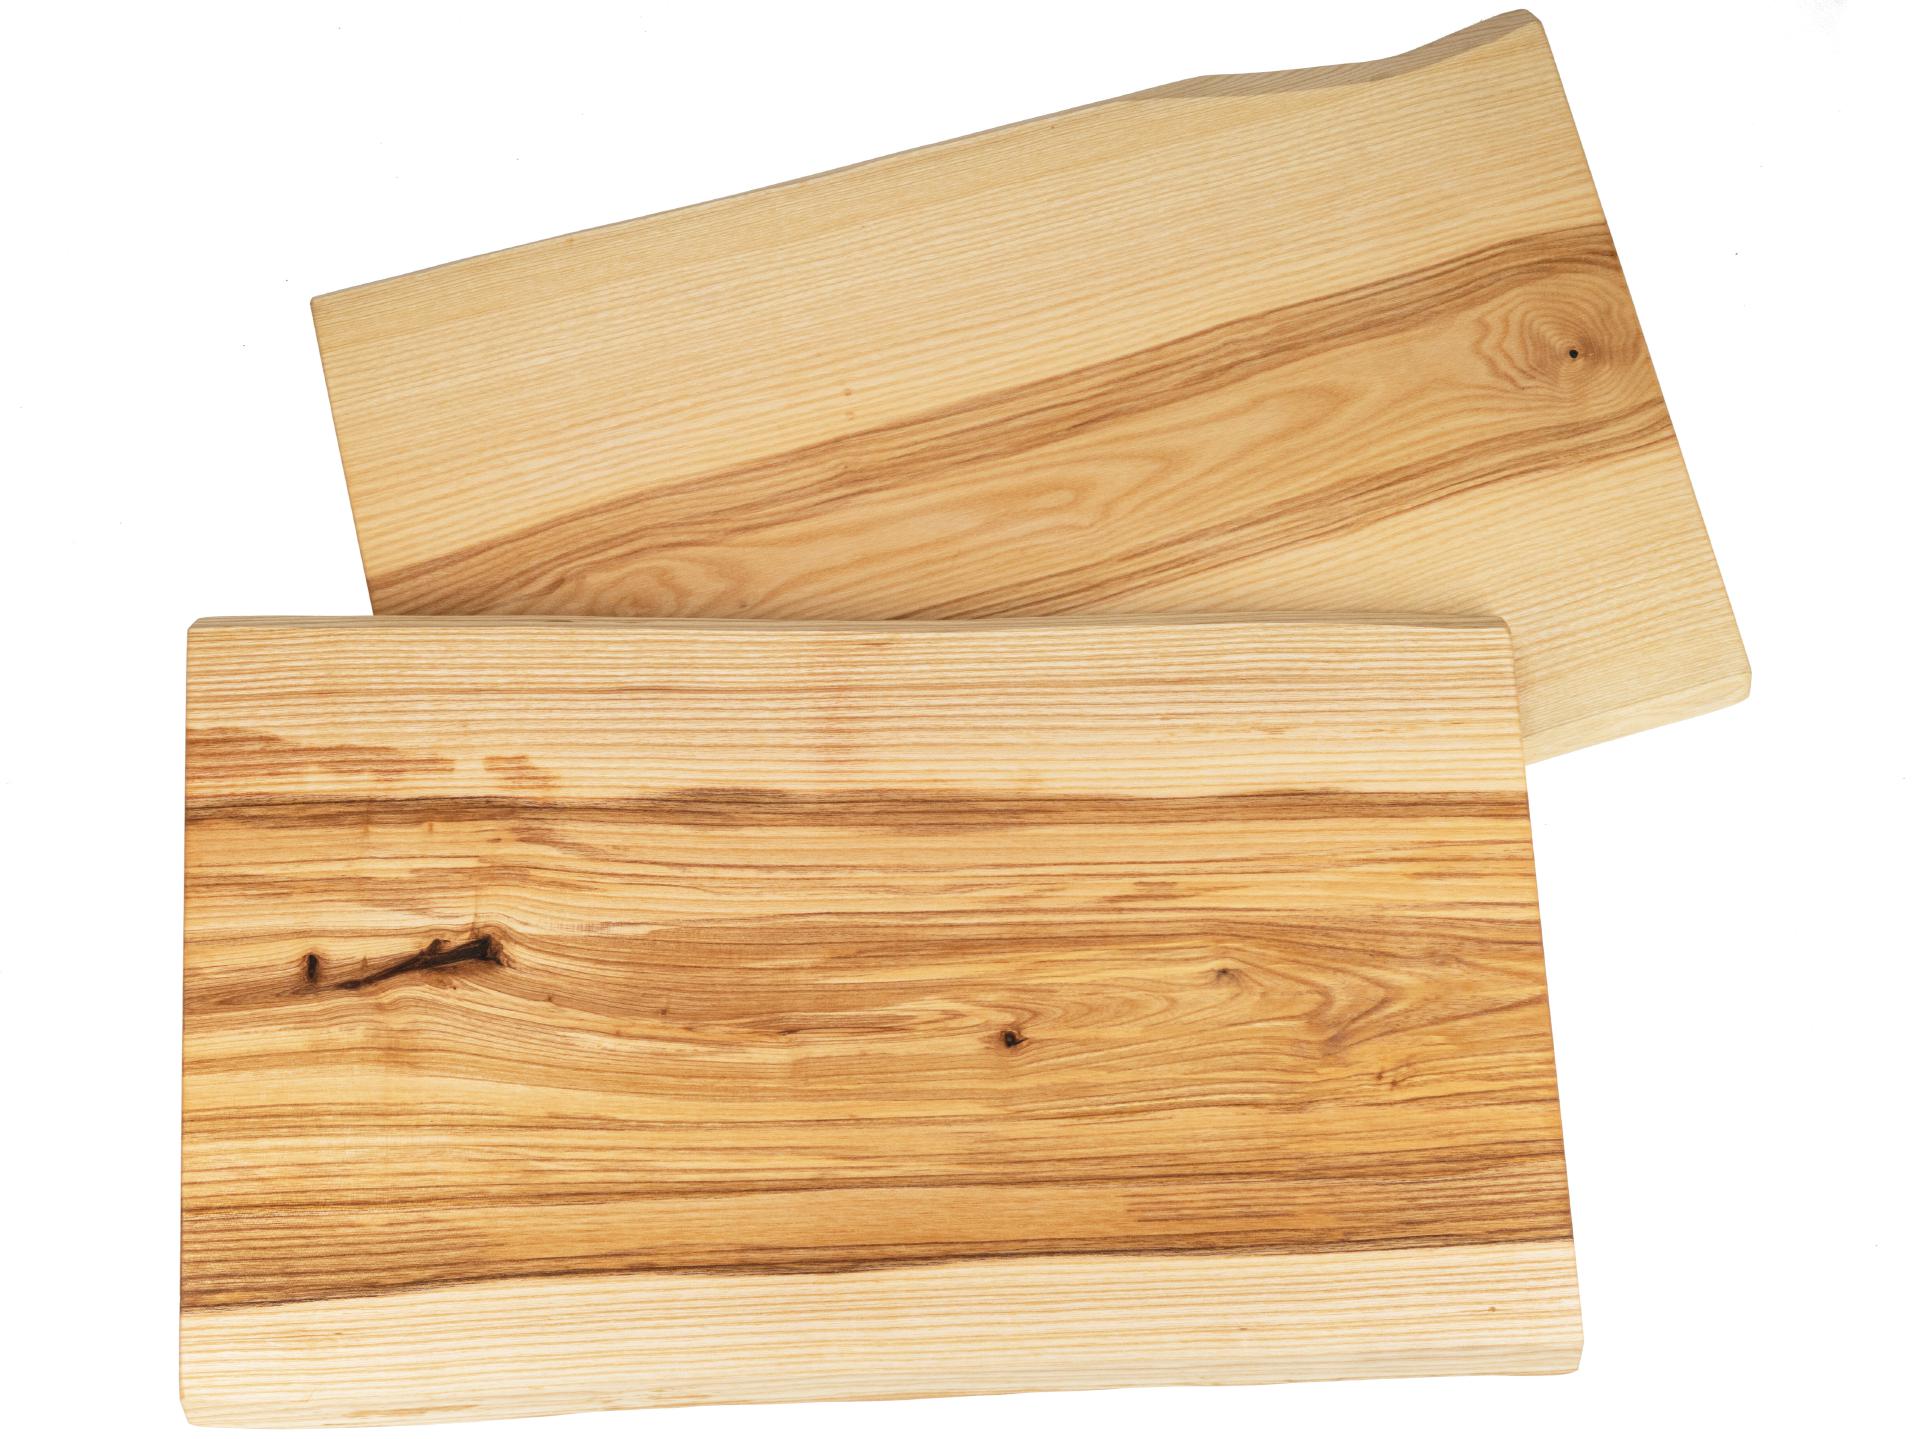 Holz Schneidebrett aus Kern Esche geölt mit Baumkante geschliffen 22mm dick 62 x 35-40 cm